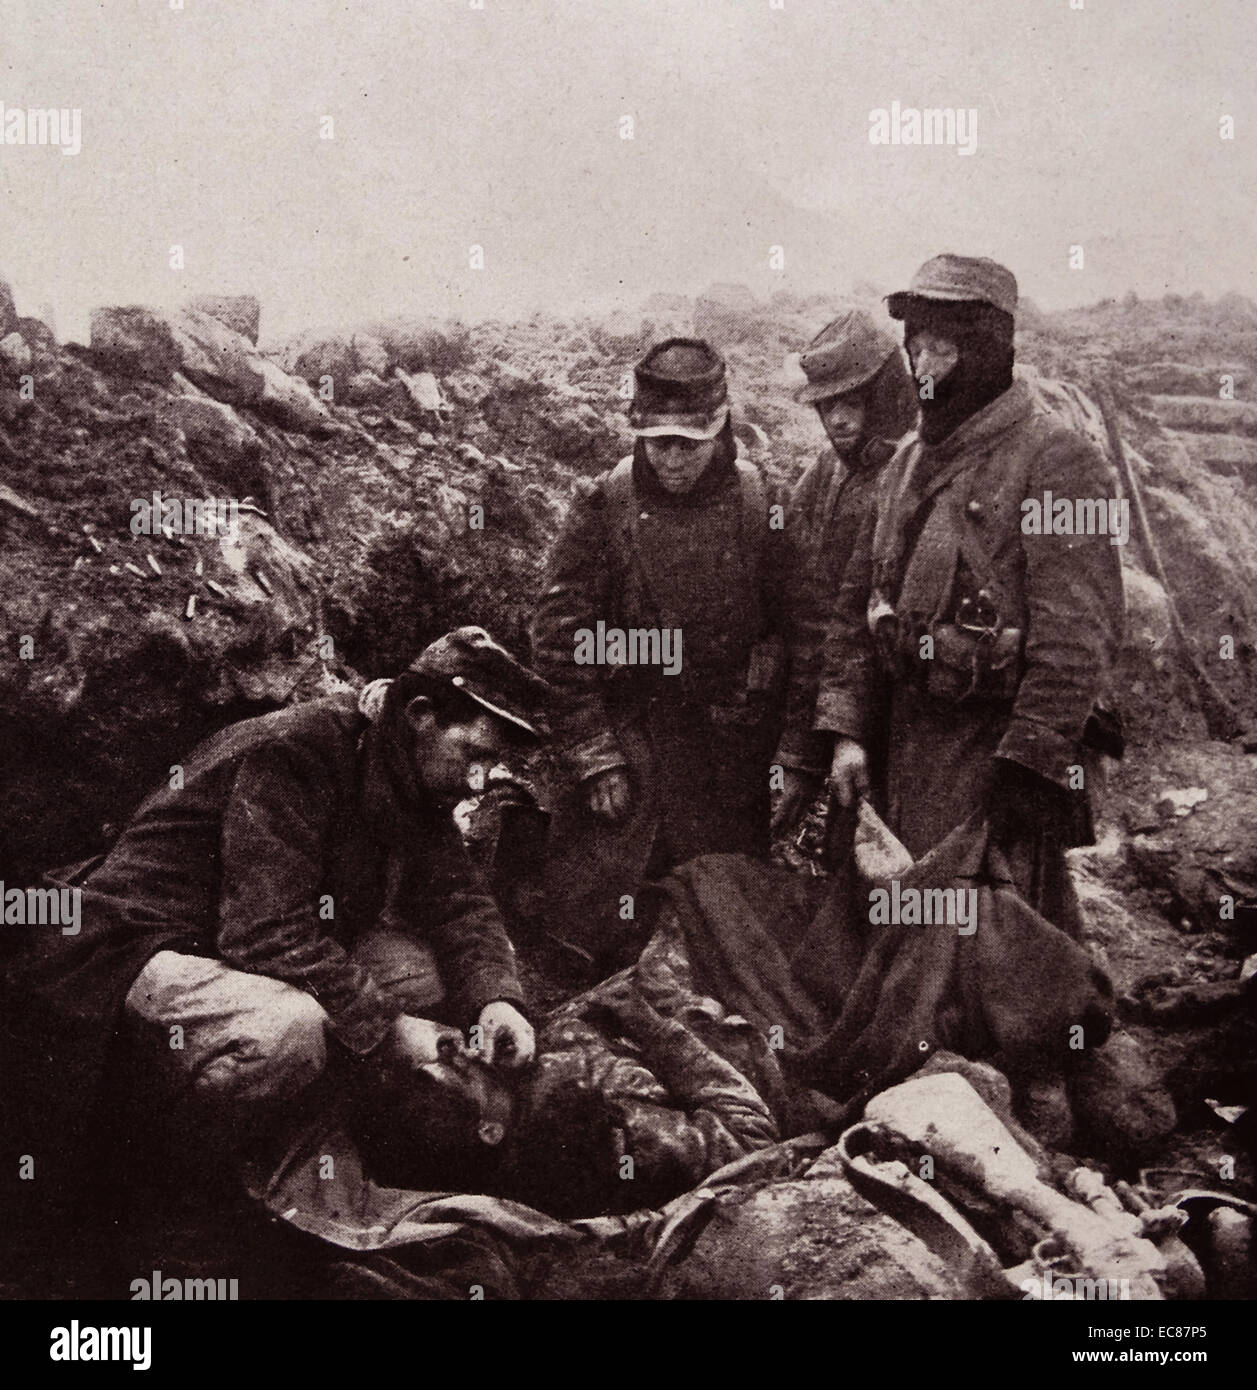 Fotografia dei soldati francesi che esegue l'ultima diritti su un compagno caduto nella Prima Guerra Mondiale. Datata 1915 Foto Stock